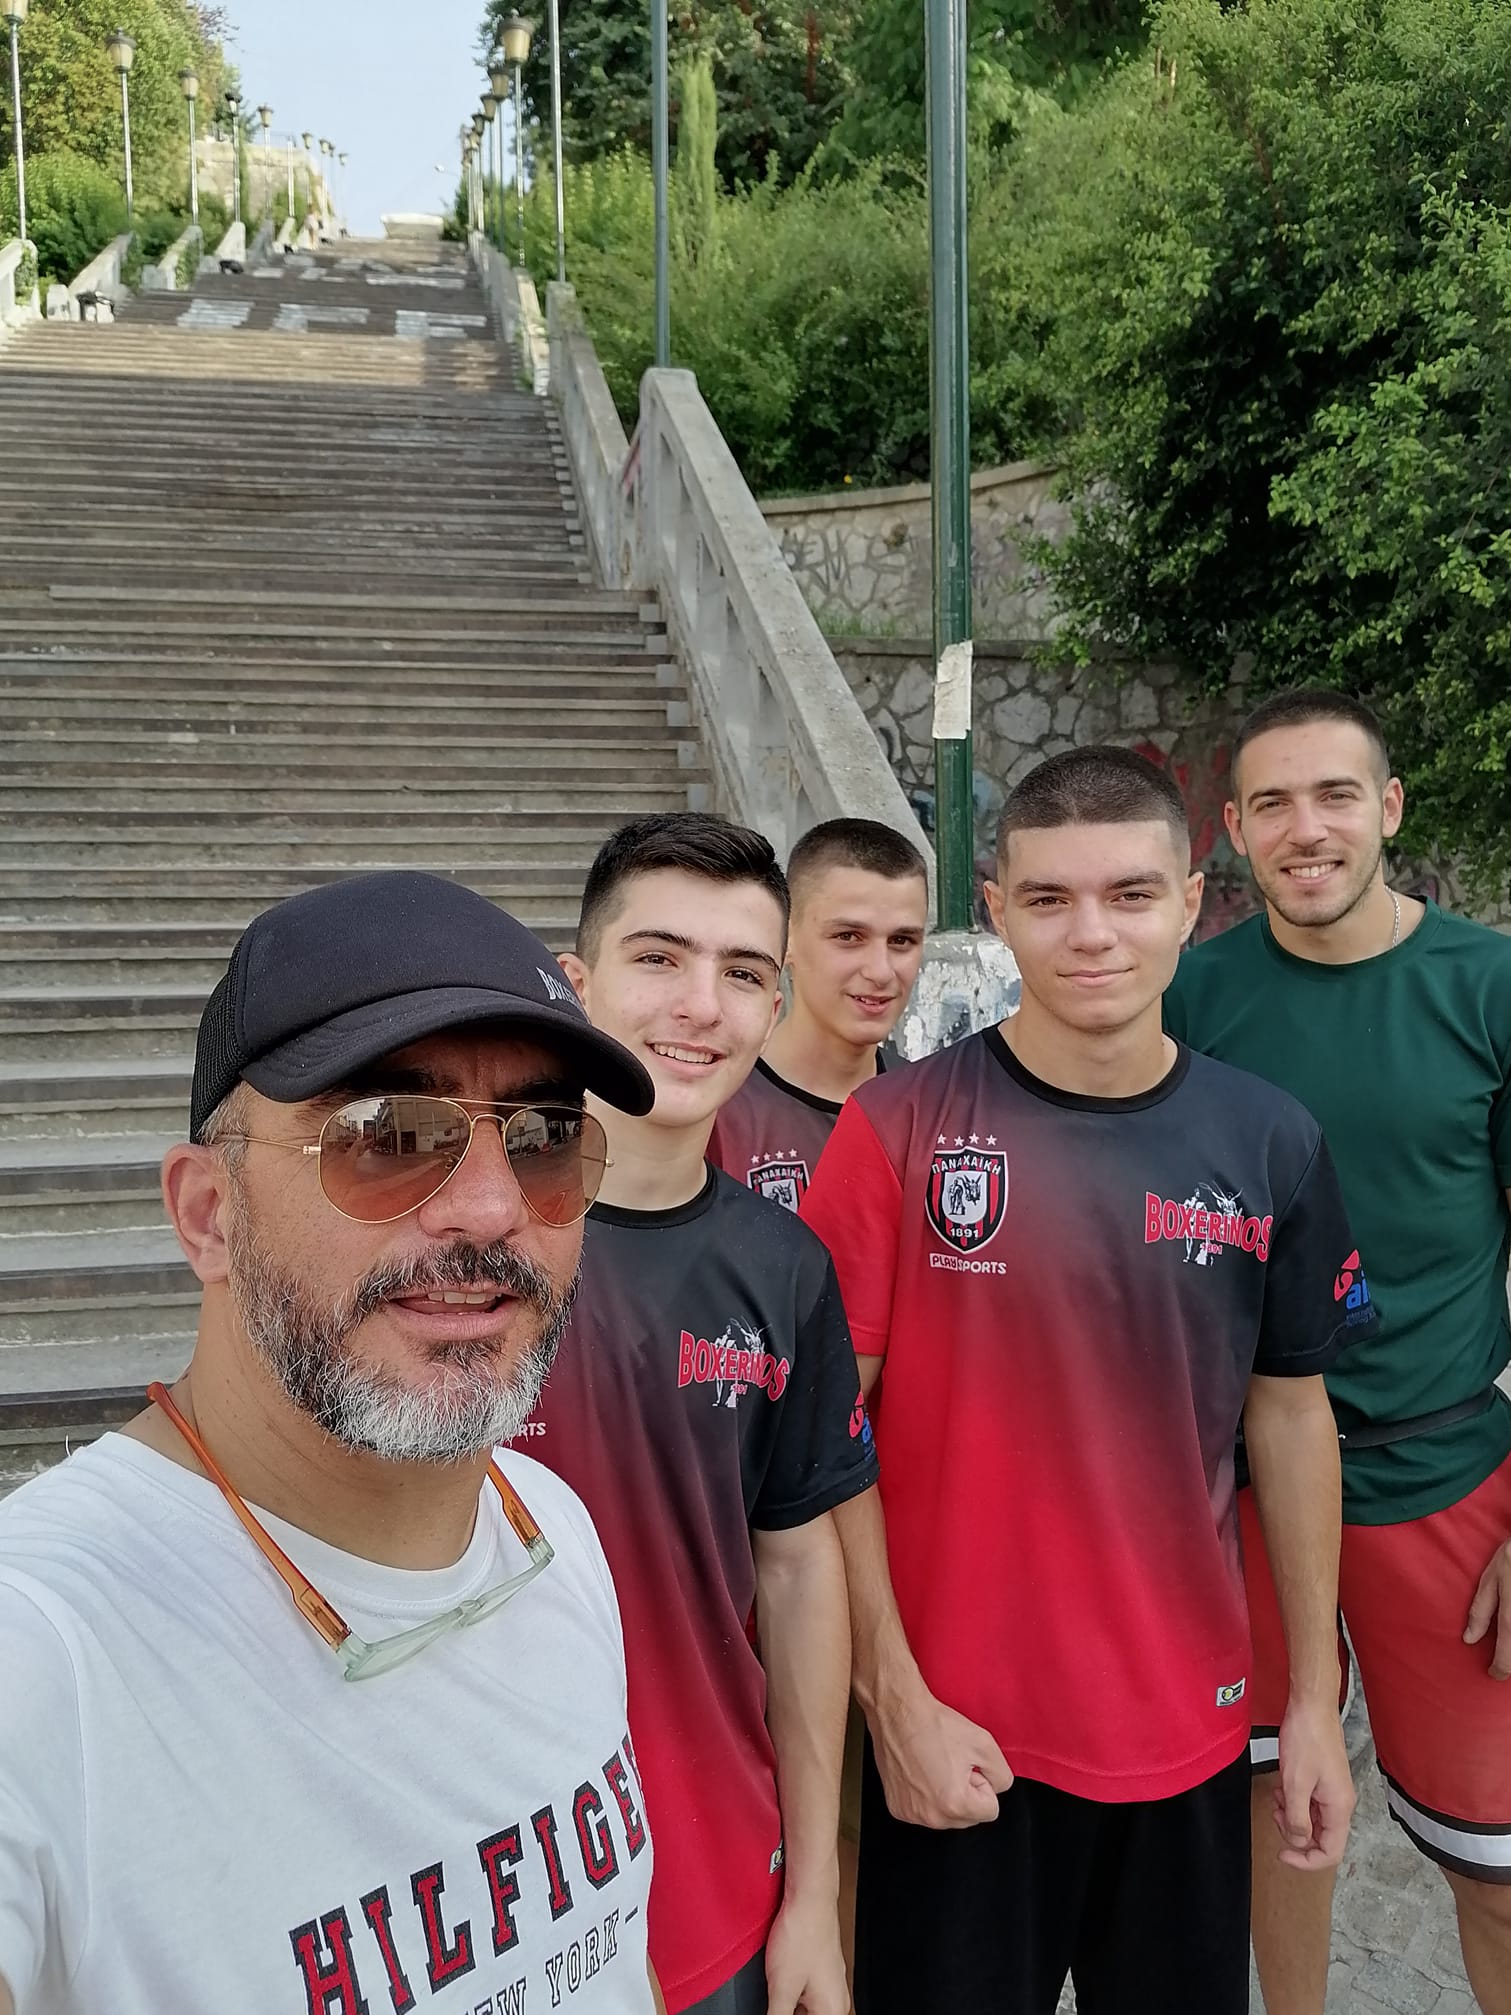 Νίκος Πλέας στον ΣΠΟΡ FM Πάτρας 96,3: "Να έρθουν τα παιδιά ξανά στον αθλητισμό"